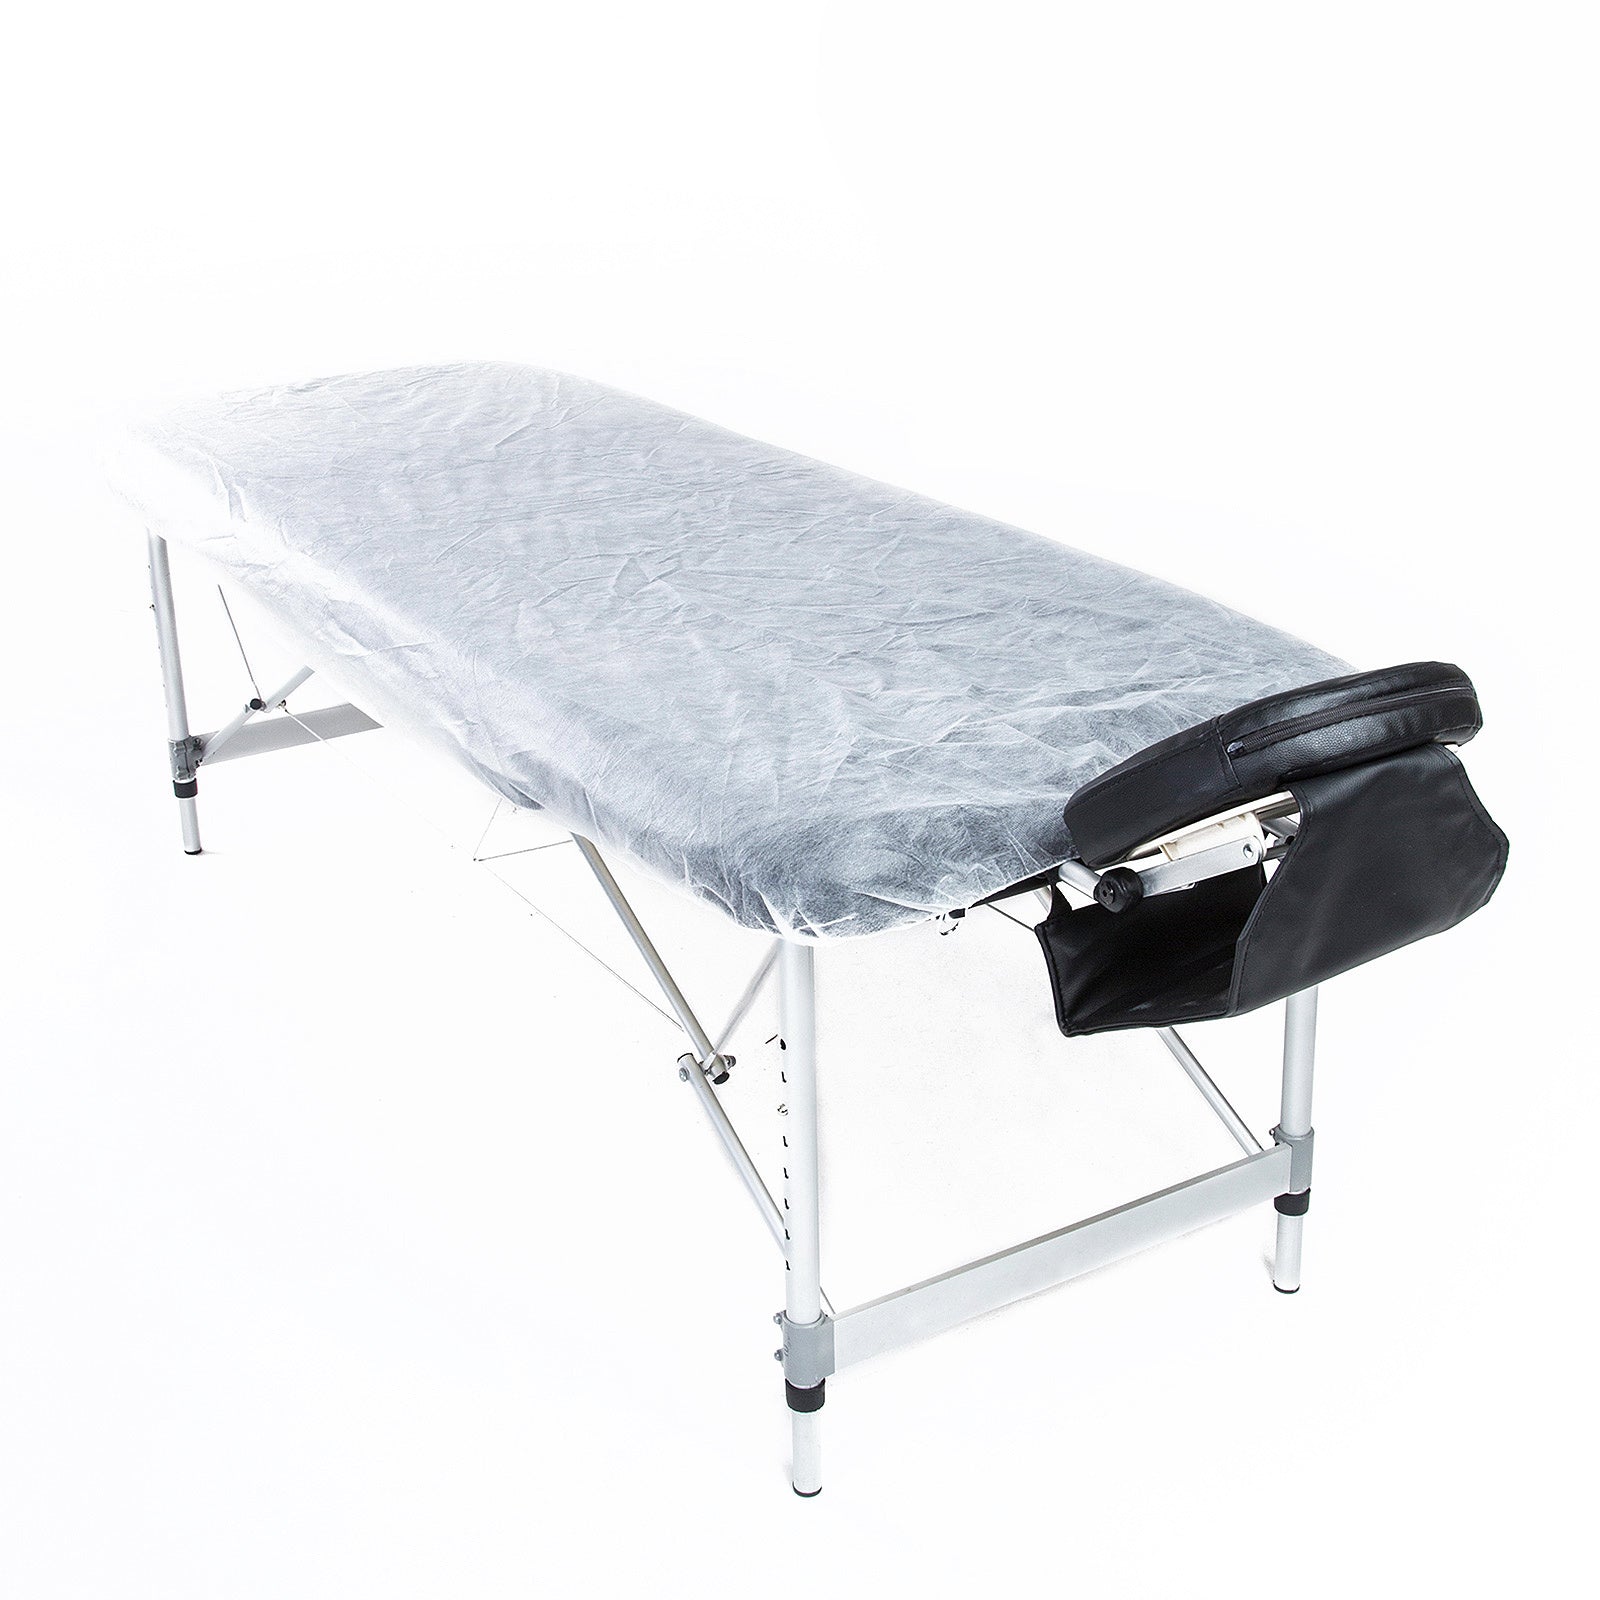 15pcs Disposable Massage Table Sheet Cover 180cm x 75cm - image1